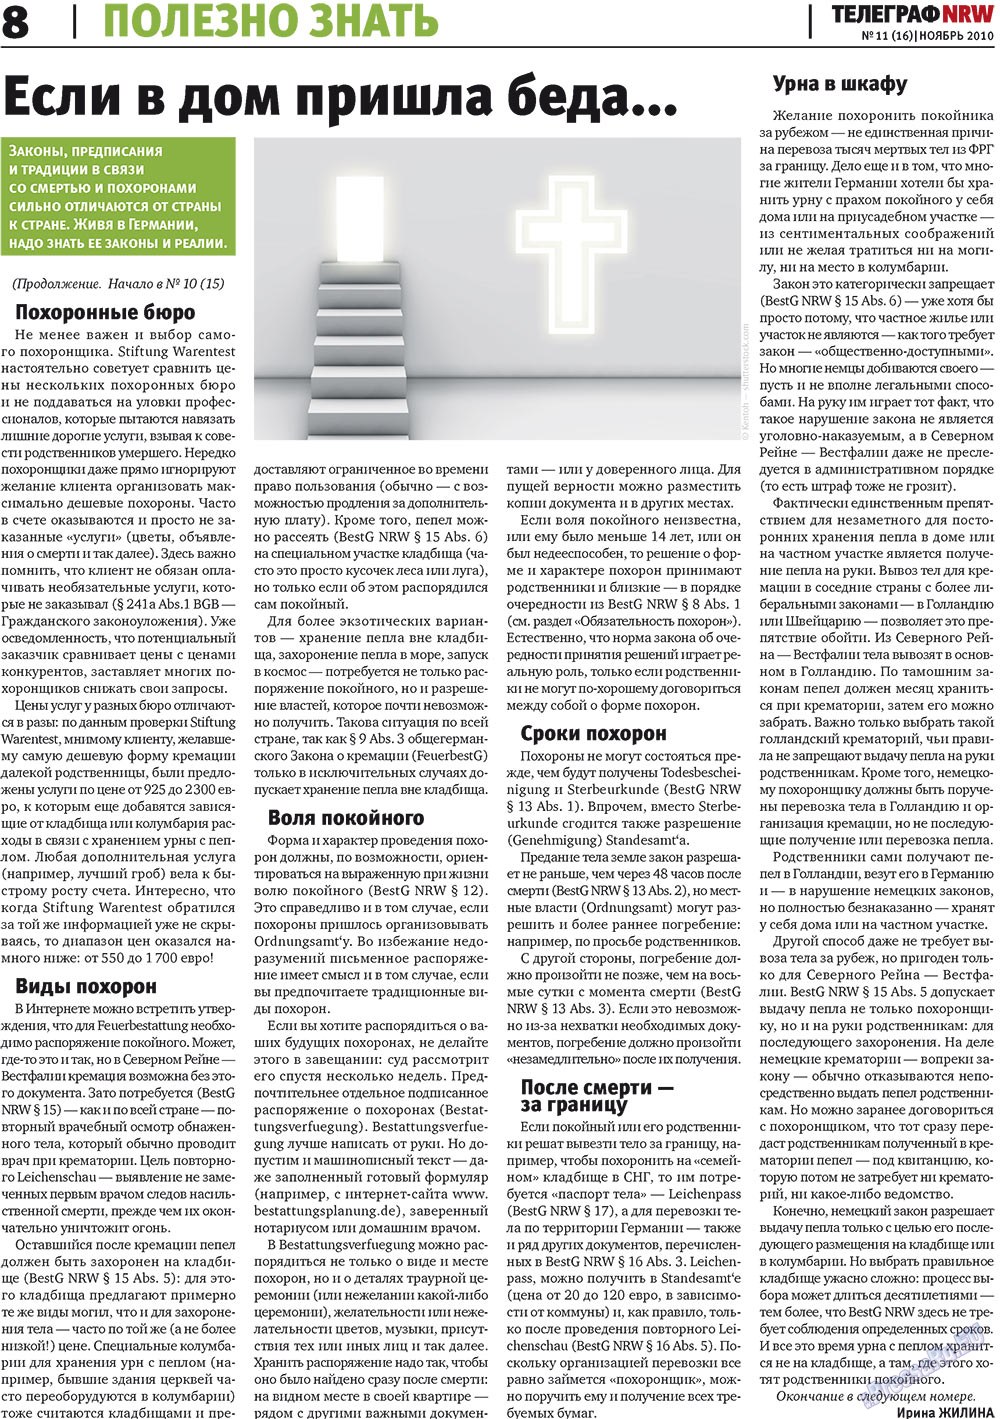 Телеграф NRW (газета). 2010 год, номер 11, стр. 8